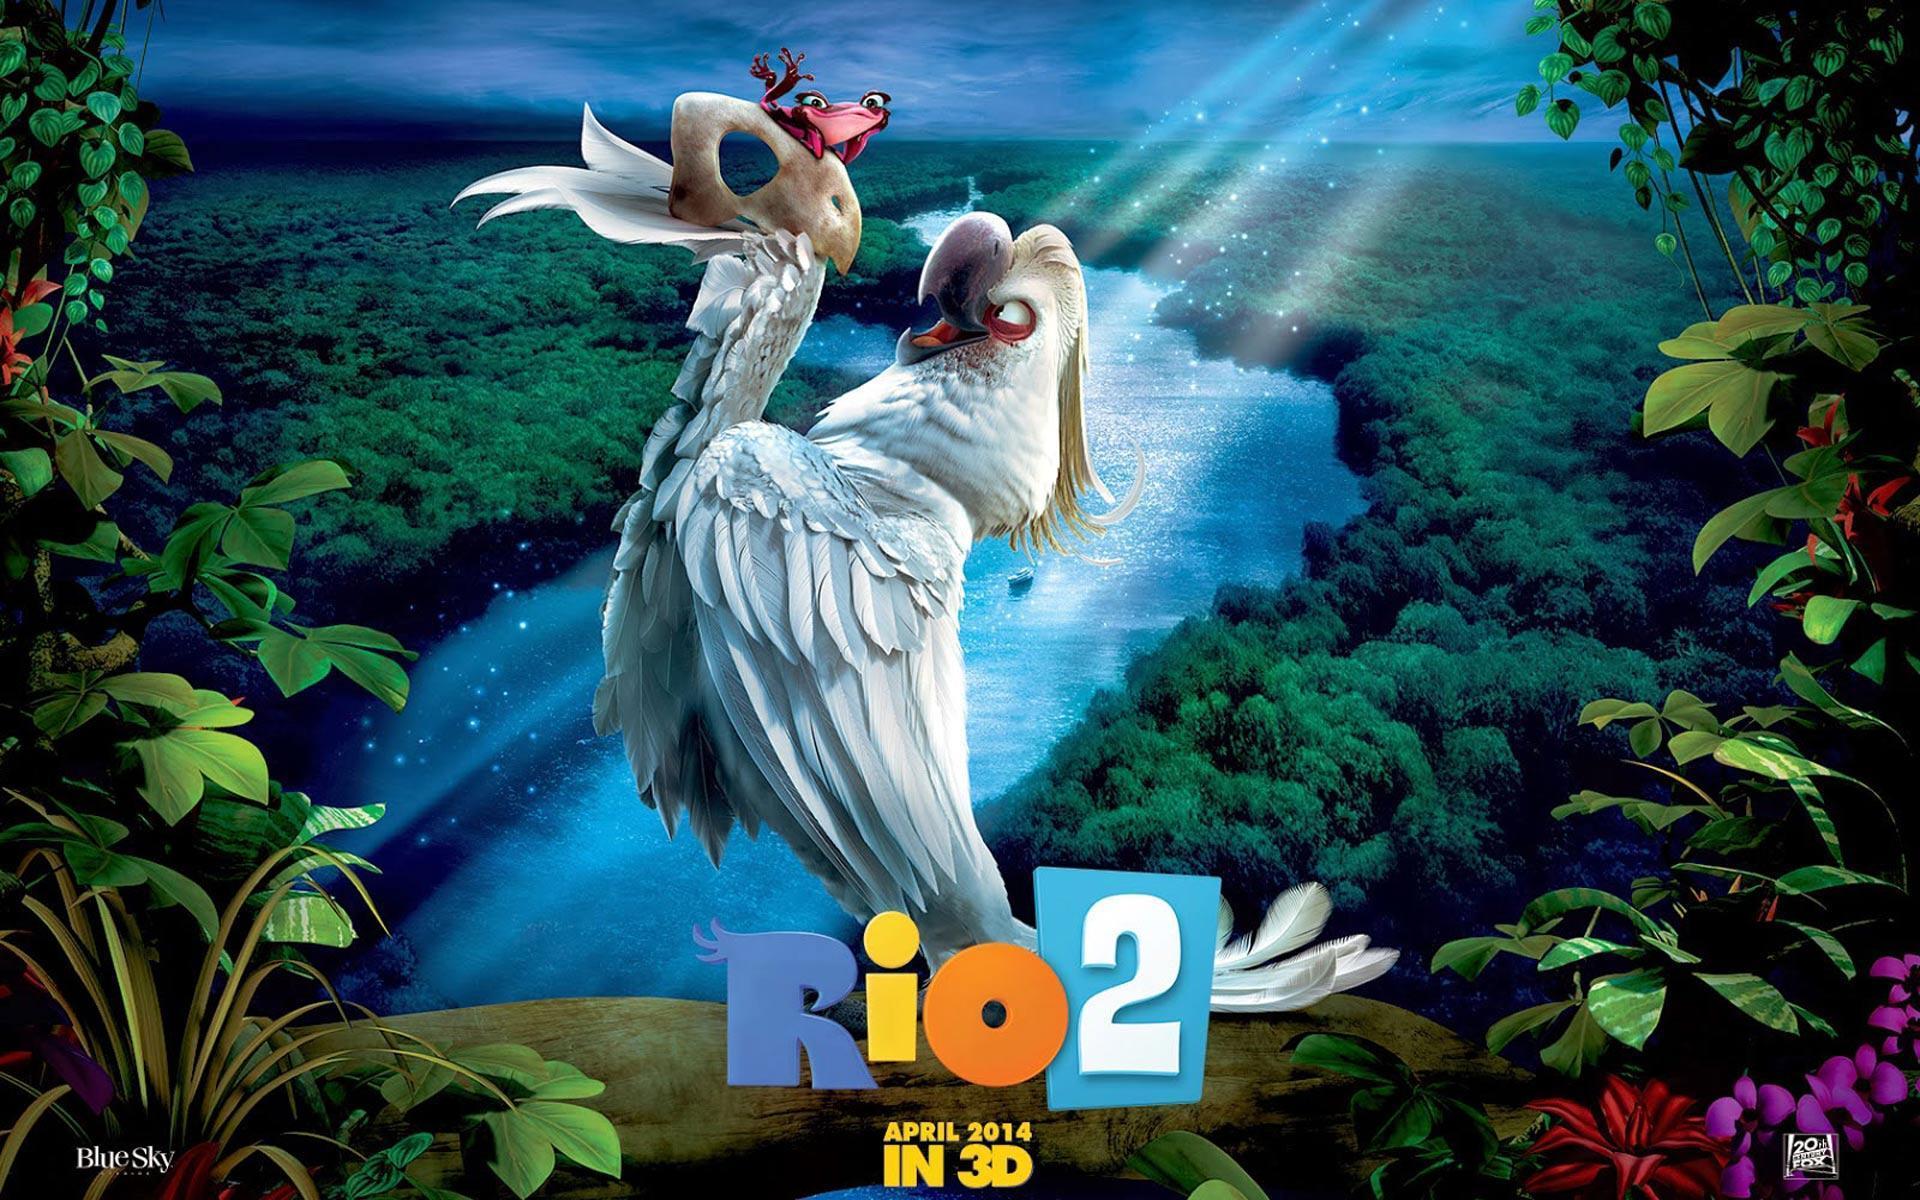 Amazing New RIO 2 Wallpaper HD & Rio 2 Desktop Background